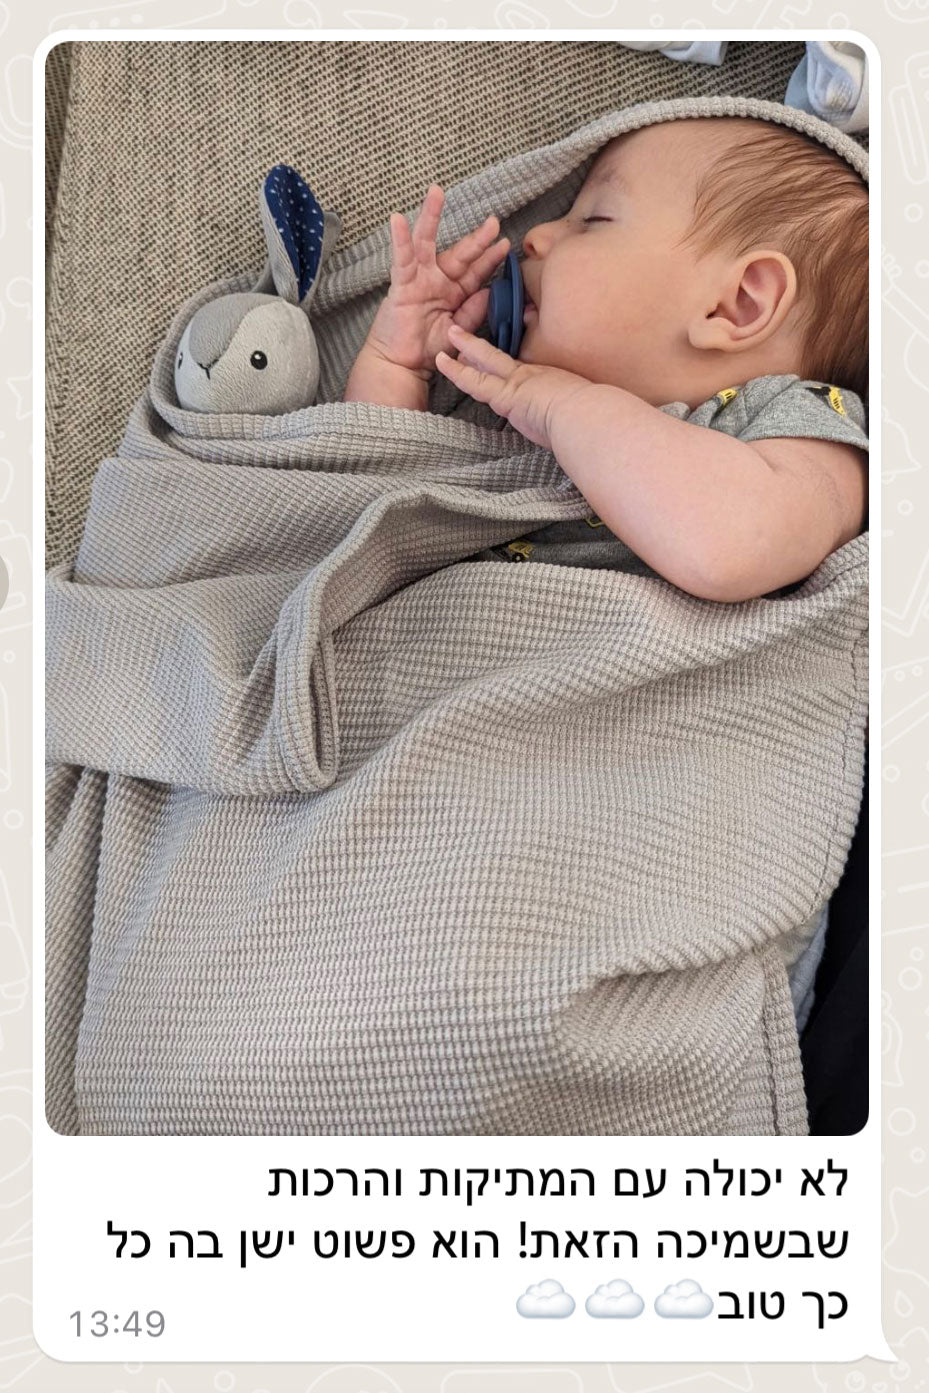 שמיכת עיטוף לתינוק - אפור בהיר דגם גריי